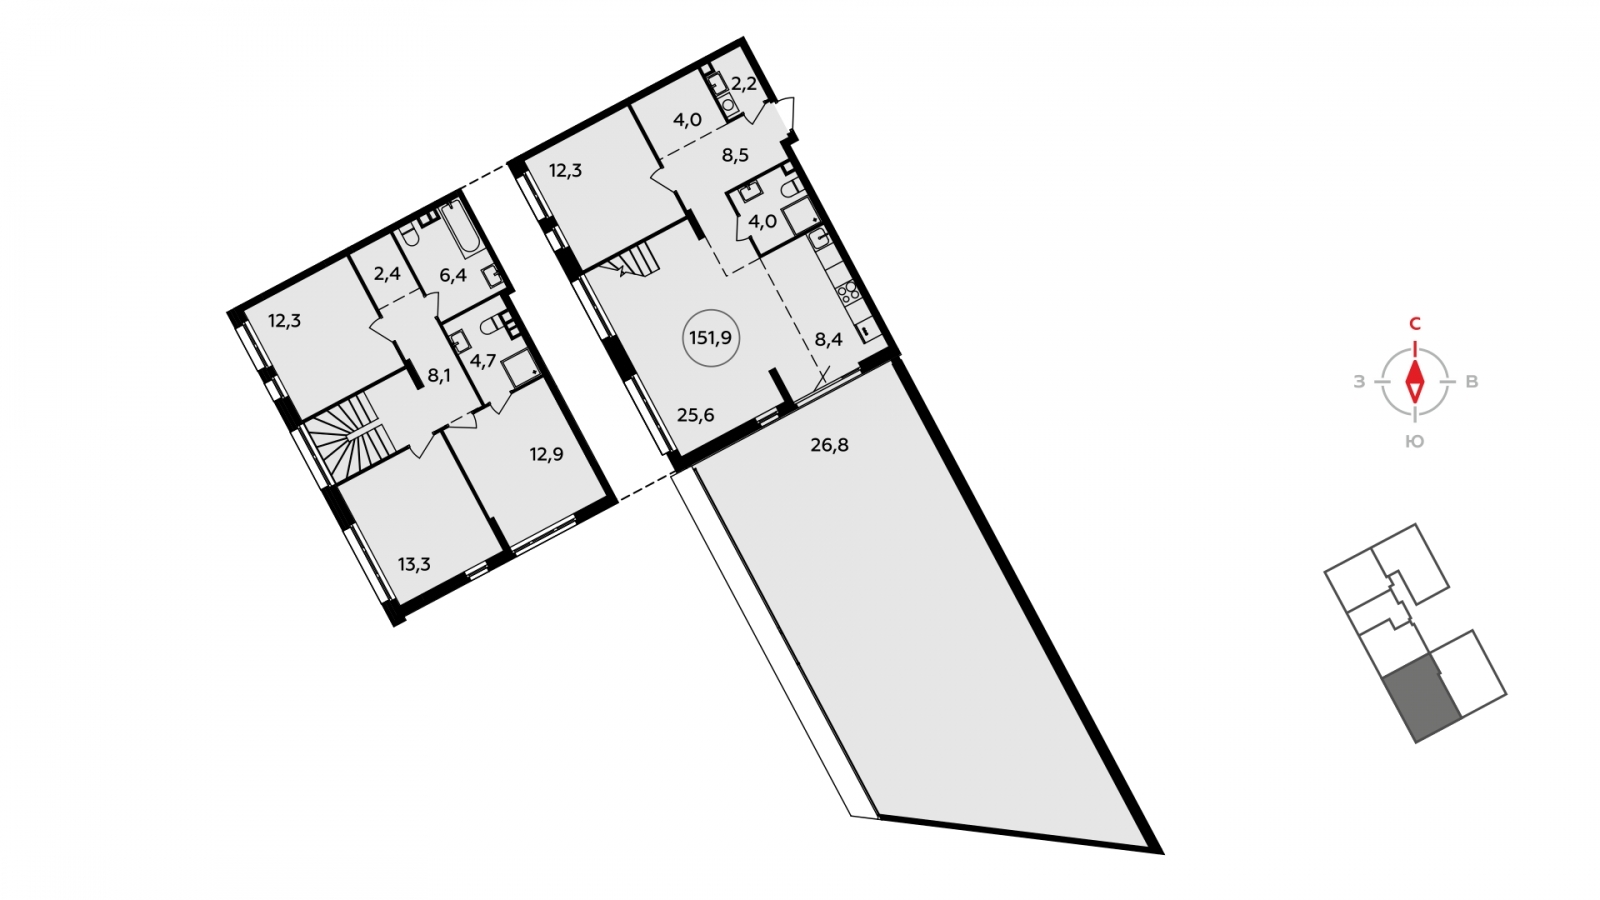 Продается двухуровневая 5-комн. квартира с европланировкой с террасой в новом ЖК, дом сдан, рядом с метро